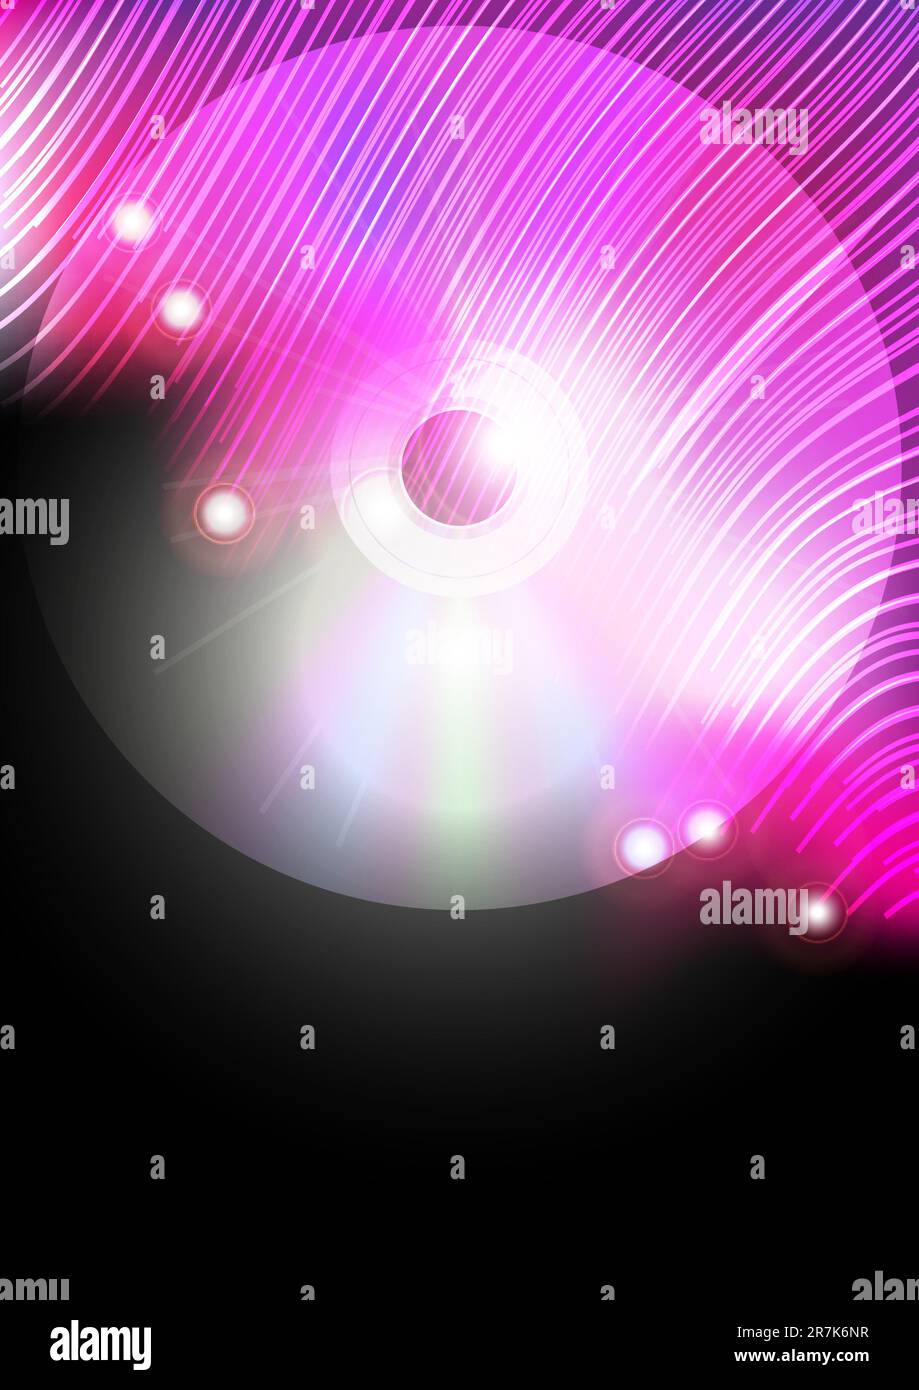 Résumé musique fond - disque compact et fibres optiques rose luminescentes sur fond noir Illustration de Vecteur